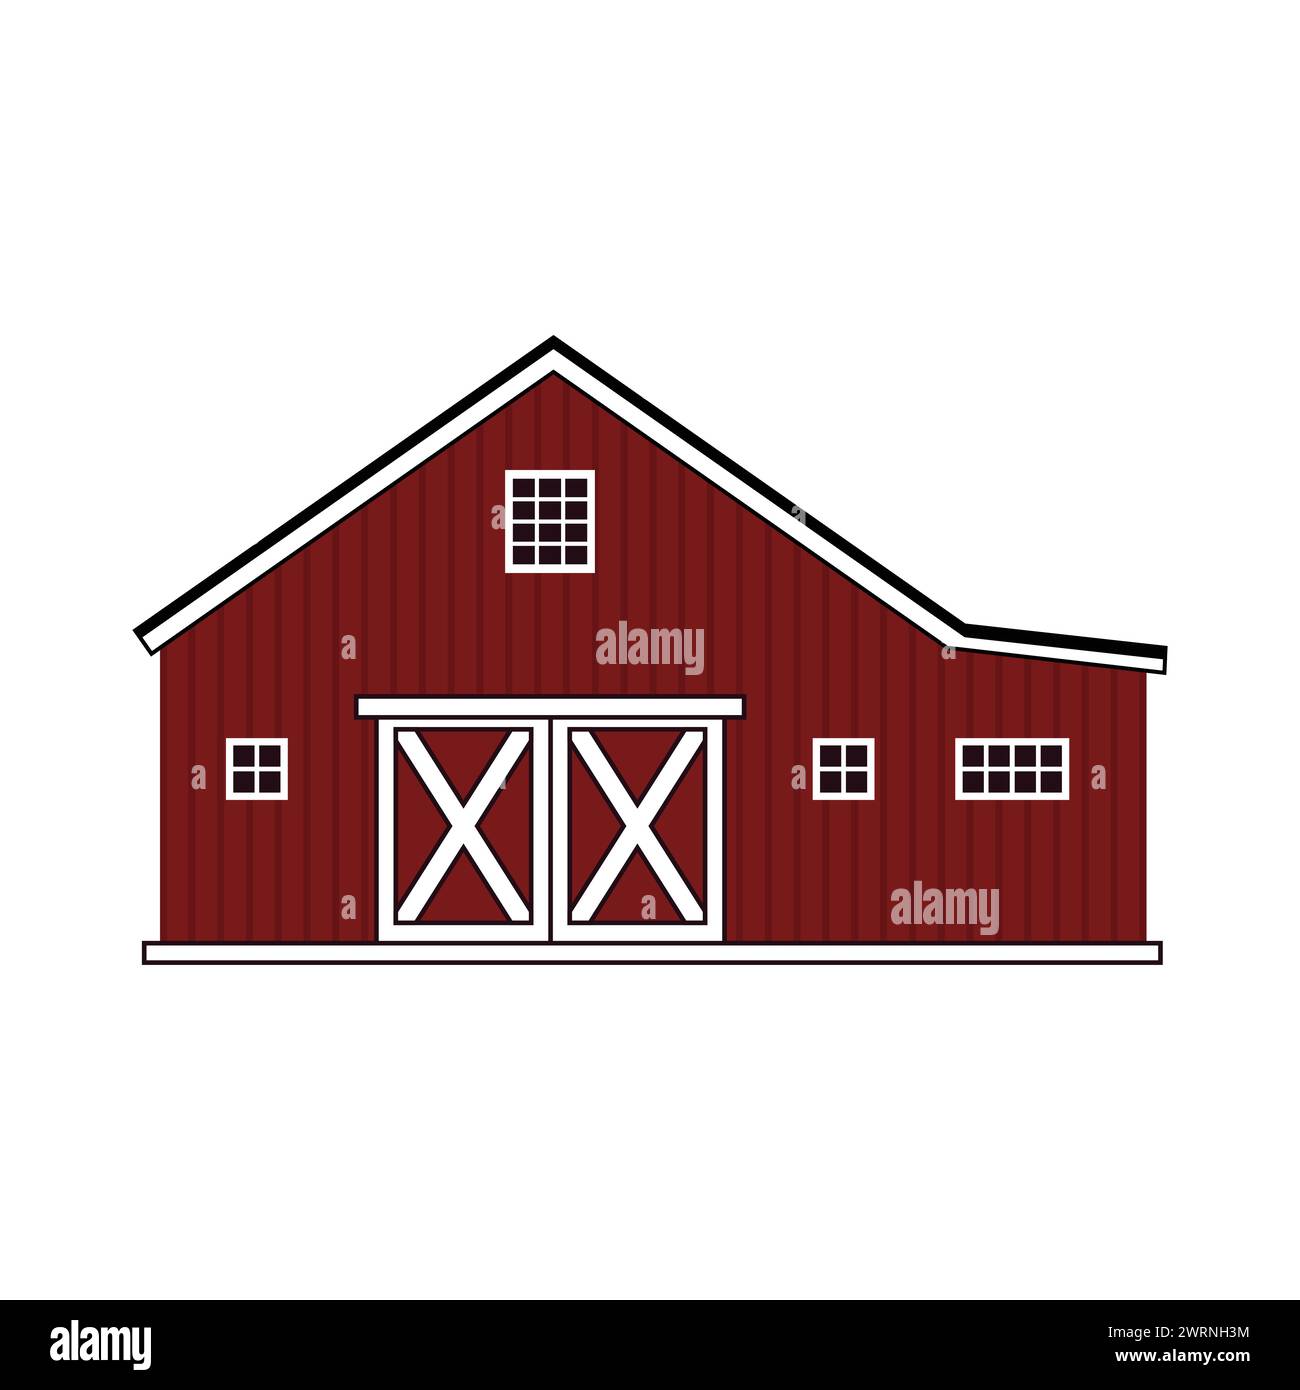 Edificio americano a cartoni animati in legno rurale rosso. Illustrazione disegnata a mano isolata del profilo vettoriale su sfondo bianco, vista frontale Illustrazione Vettoriale